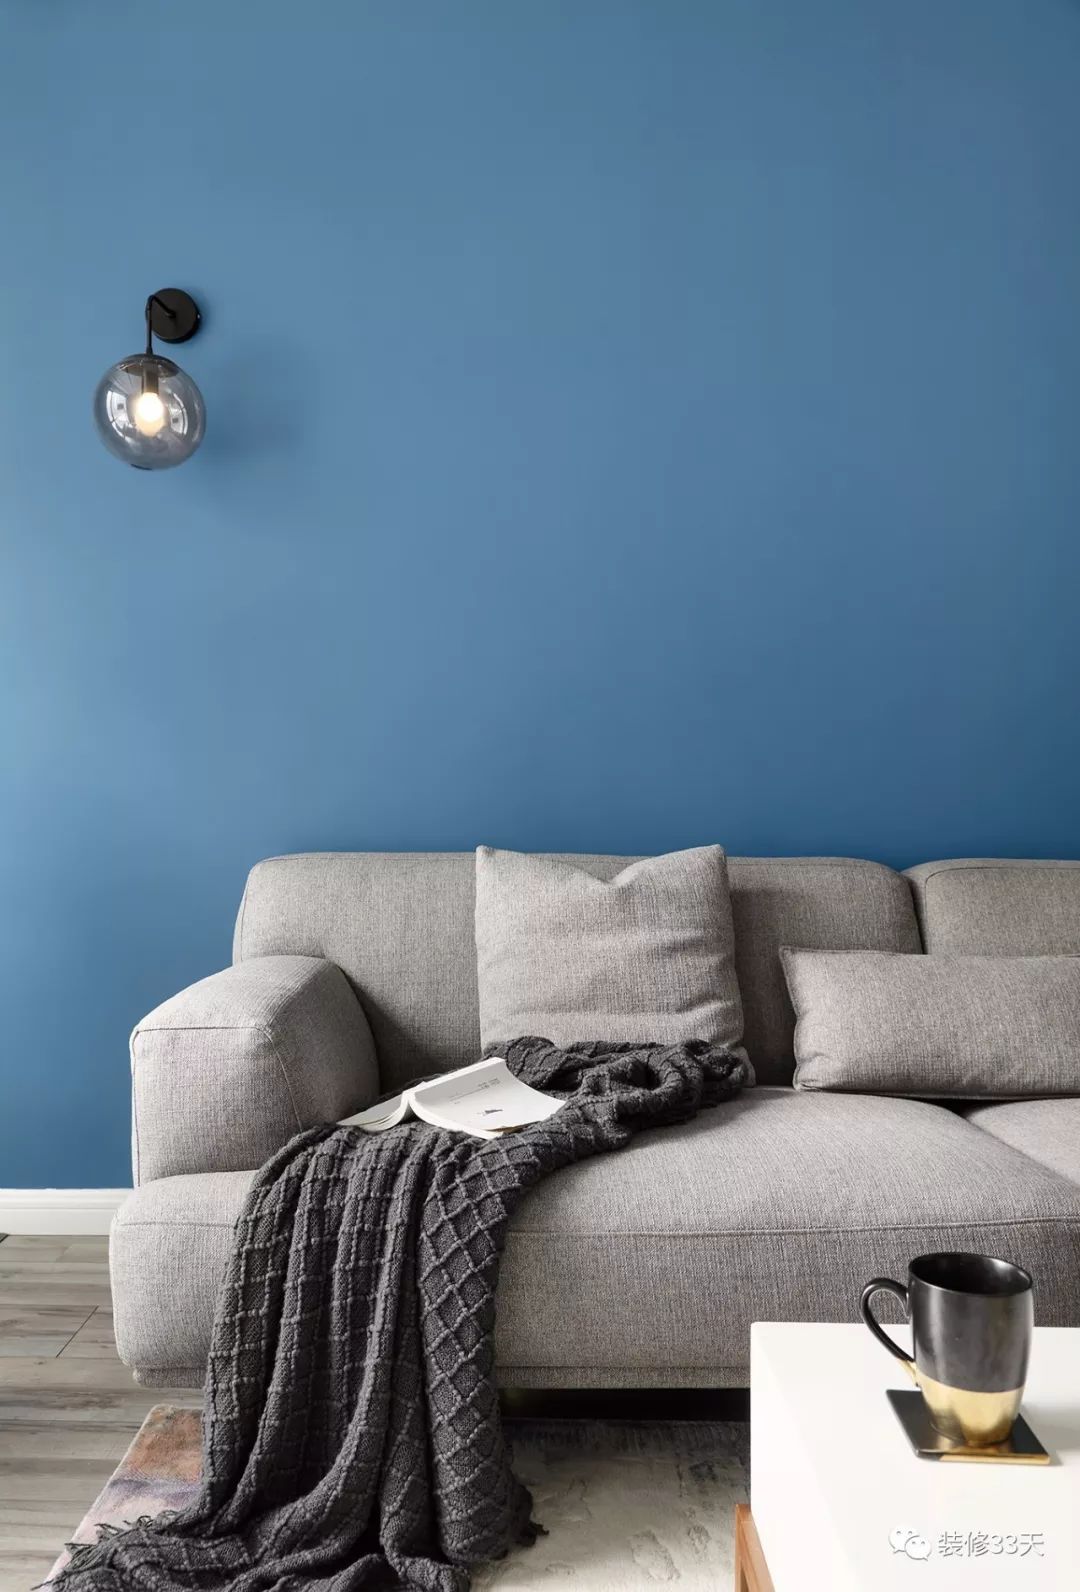 高饱和度的蓝色背景墙搭配灰色沙发,沉稳与跳跃的色彩相互衬托